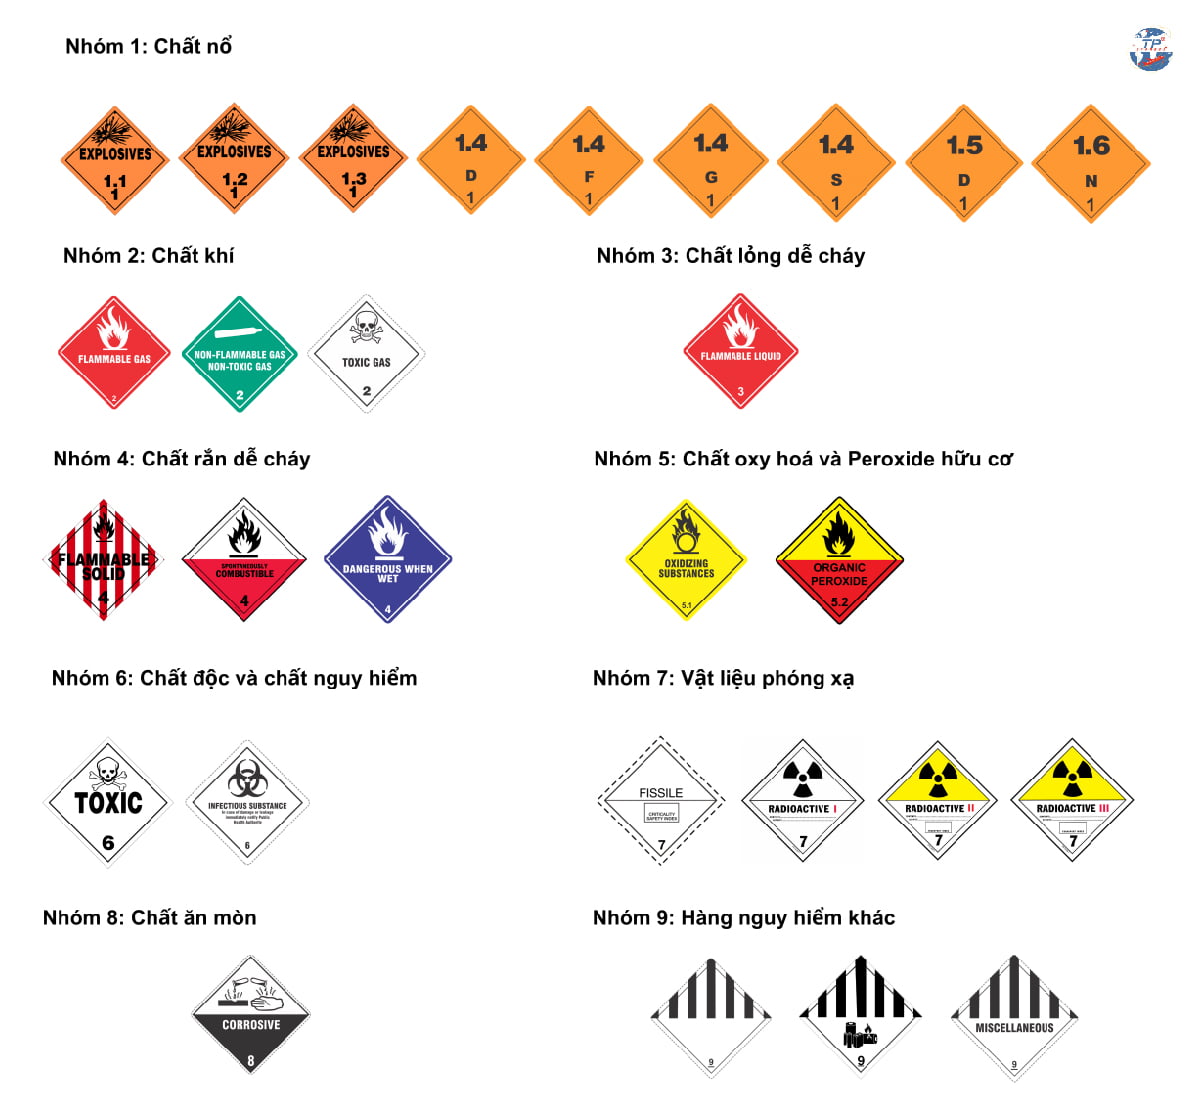 Một số loại hóa chất gây nguy hiểm được quy định trong danh mục hàng cấm bay